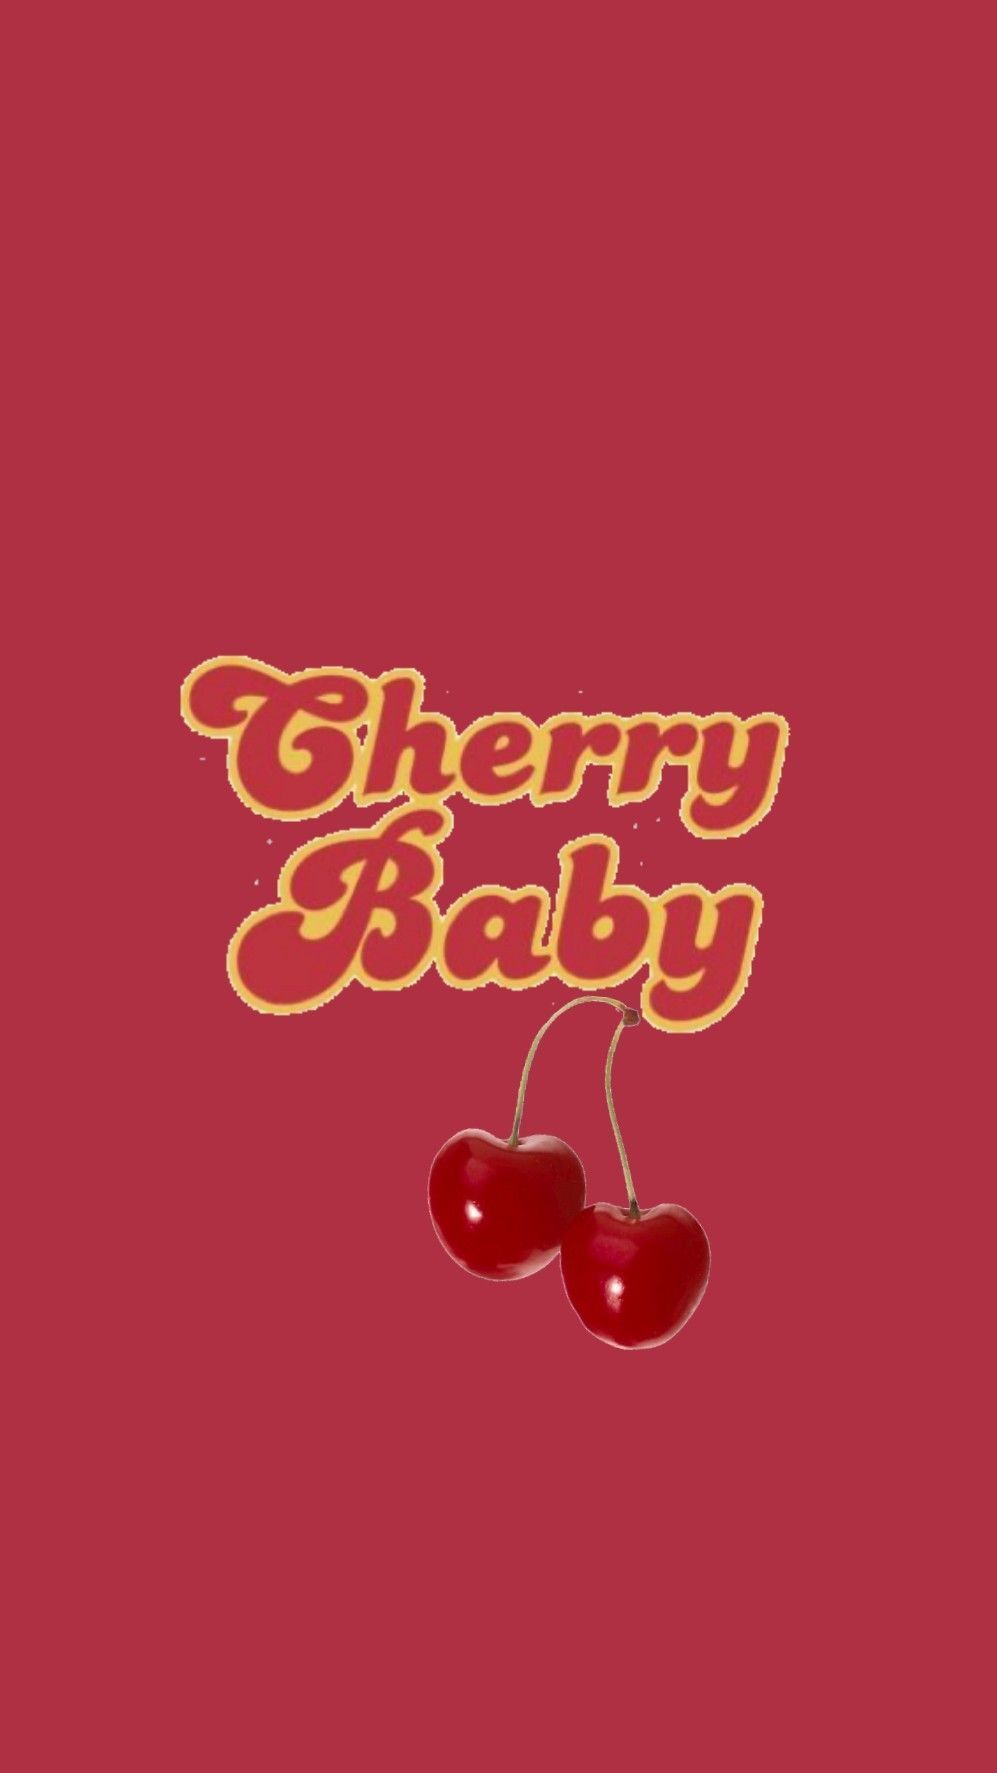 Cherry baby wallpaper - Cherry